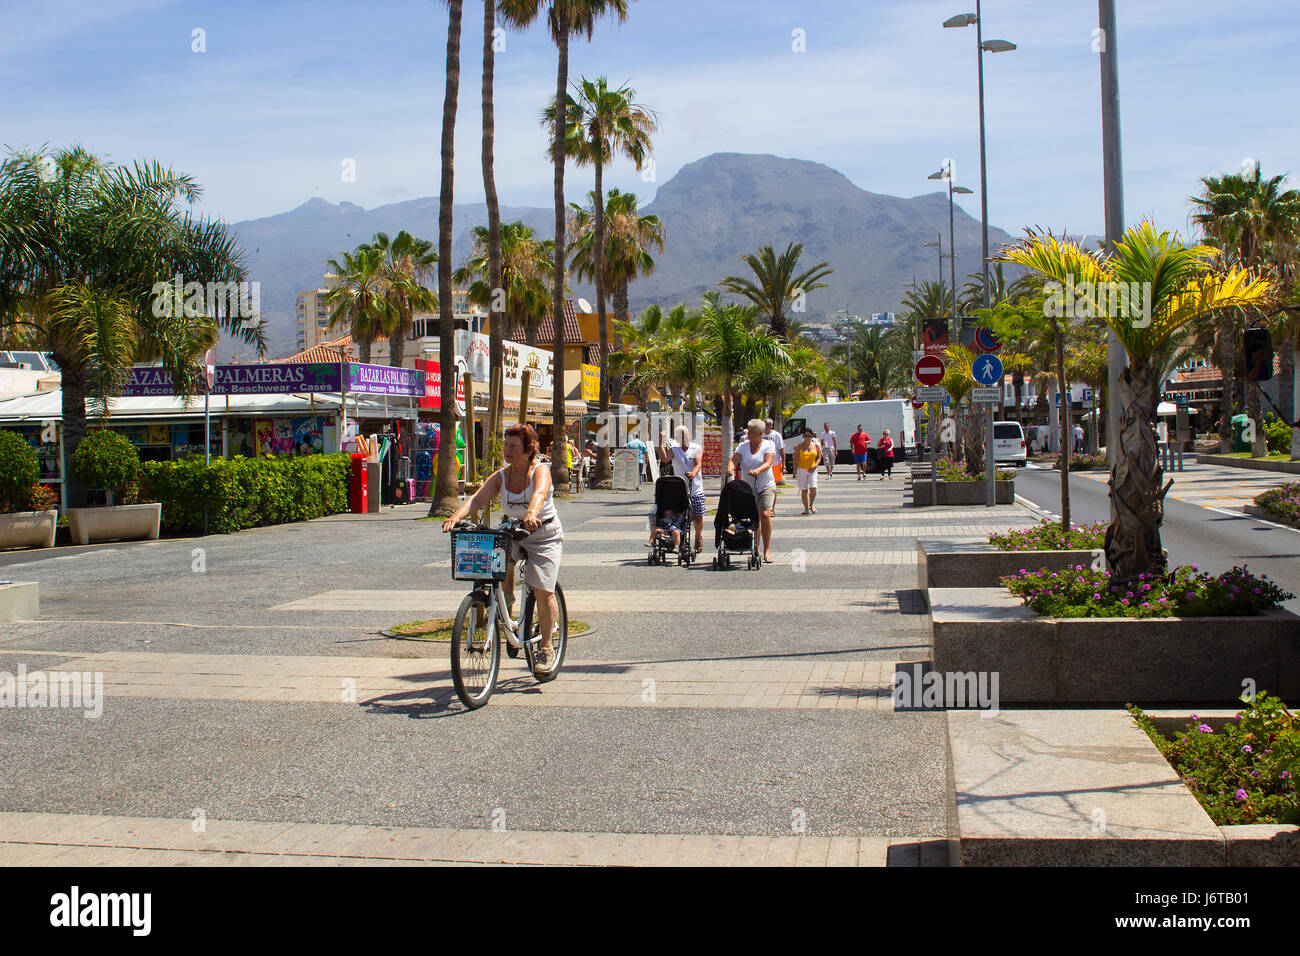 Les touristes à pied et à vélo sur une avenue bordée d'arbres avec des boutiques et des cafés à Playa de Las Americas, sur l'île de Ténériffe Banque D'Images